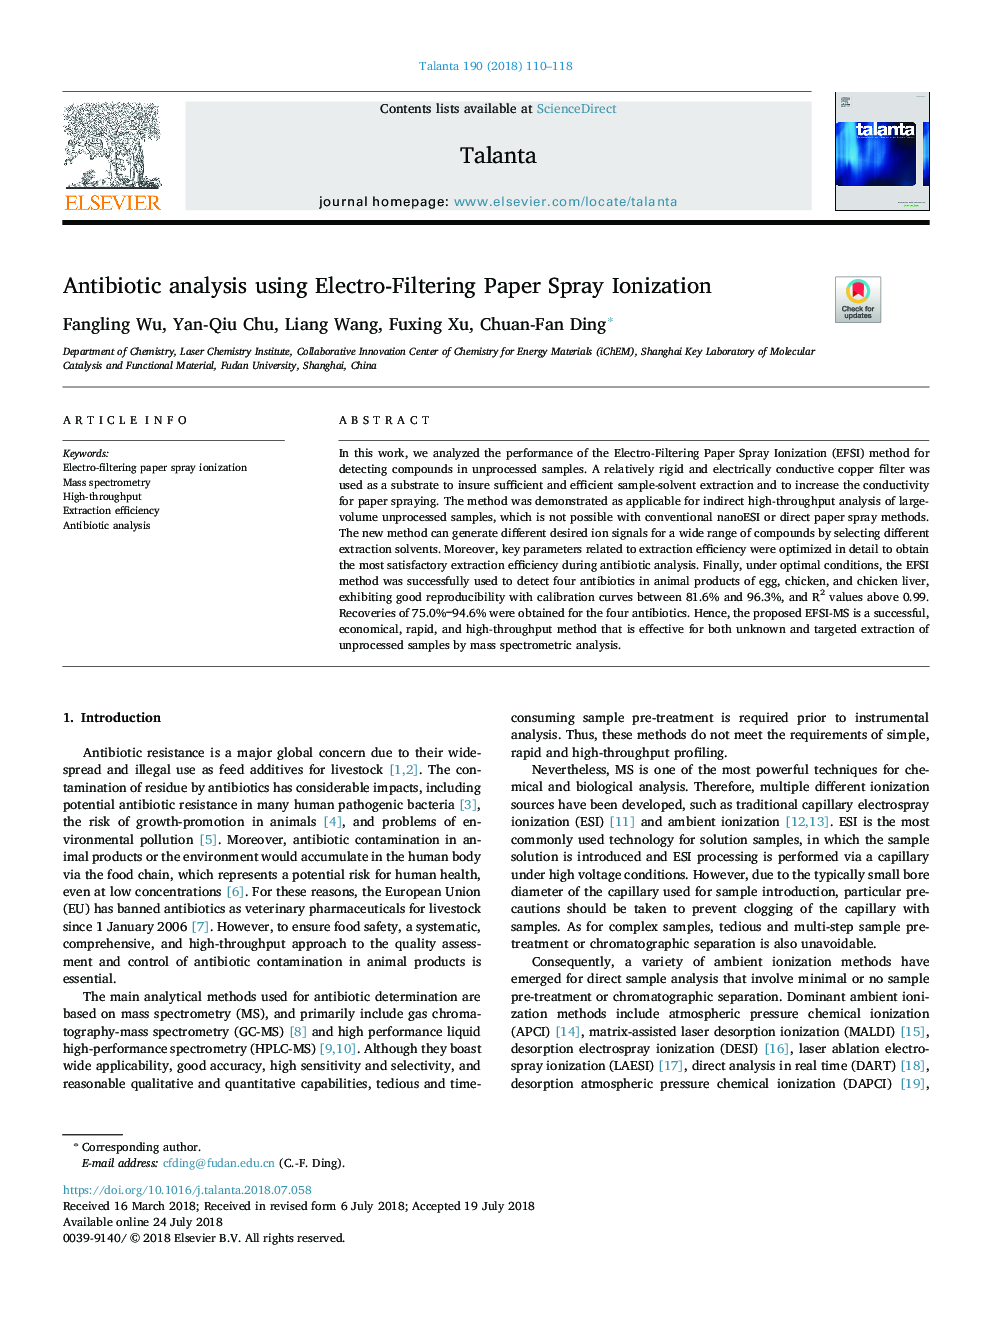 Antibiotic analysis using ElectroâFiltering Paper Spray Ionization